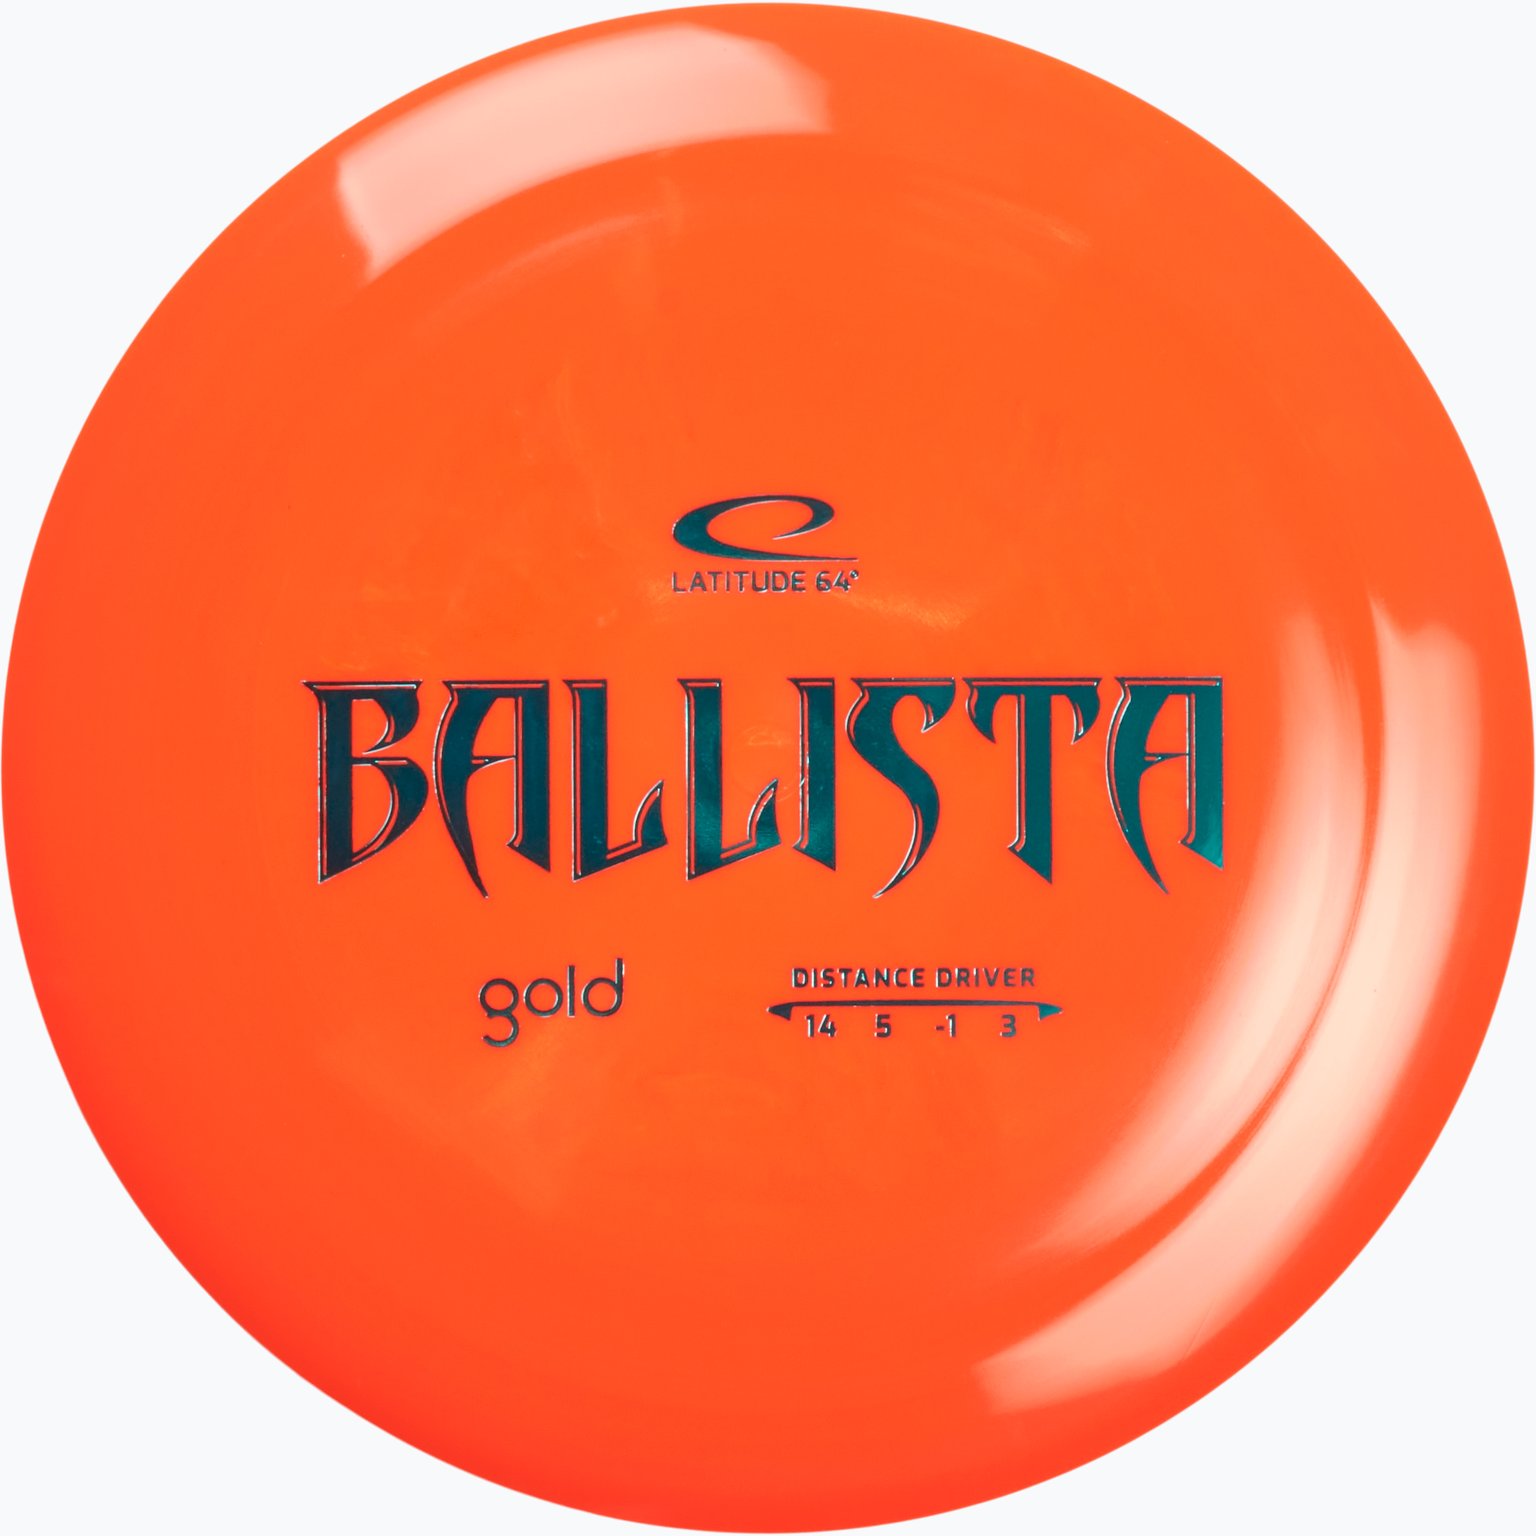 Gold Ballista Distance Driver disc